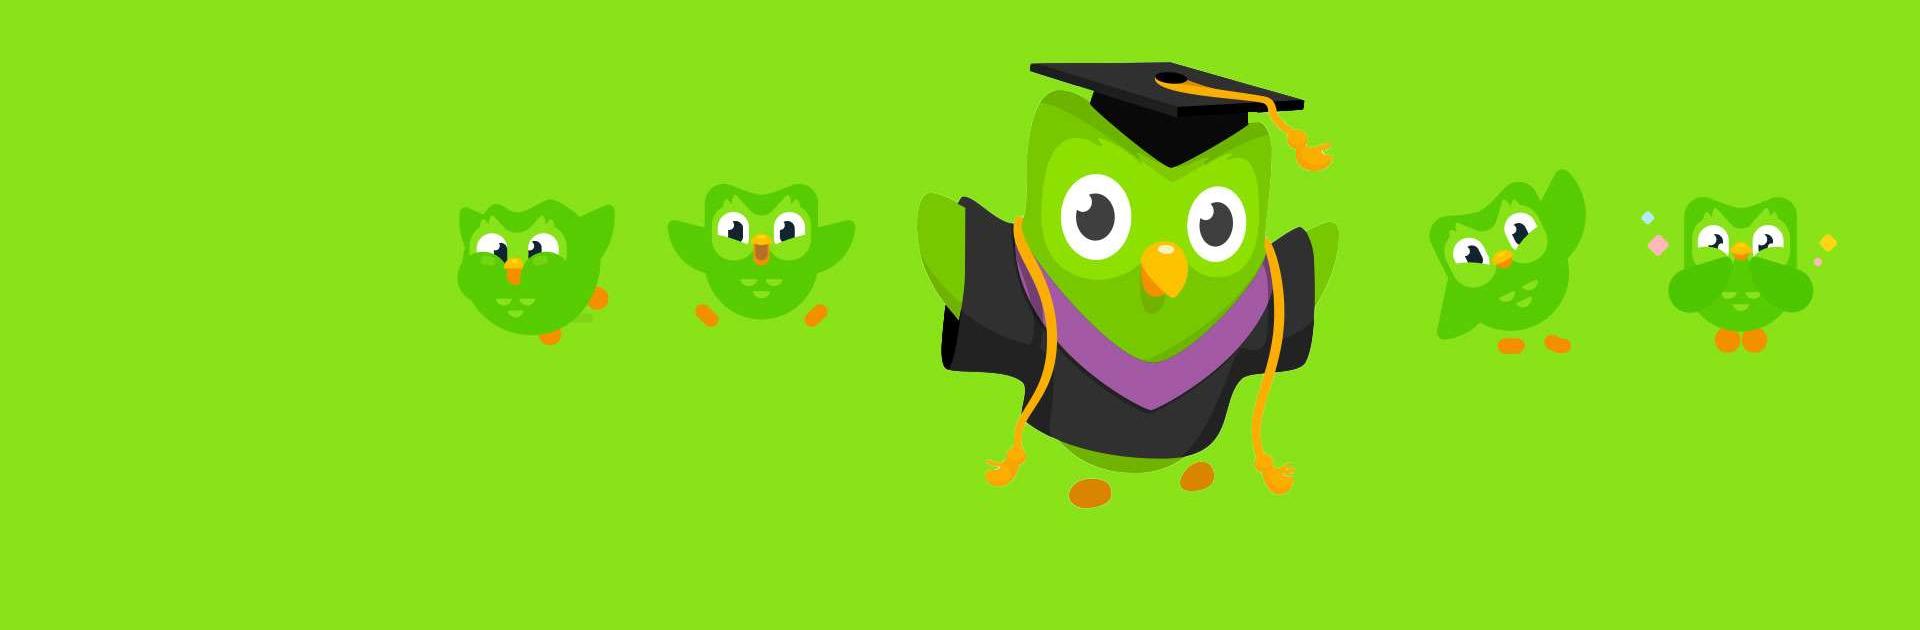 듀오링고(Duolingo): 무료 영어 학습